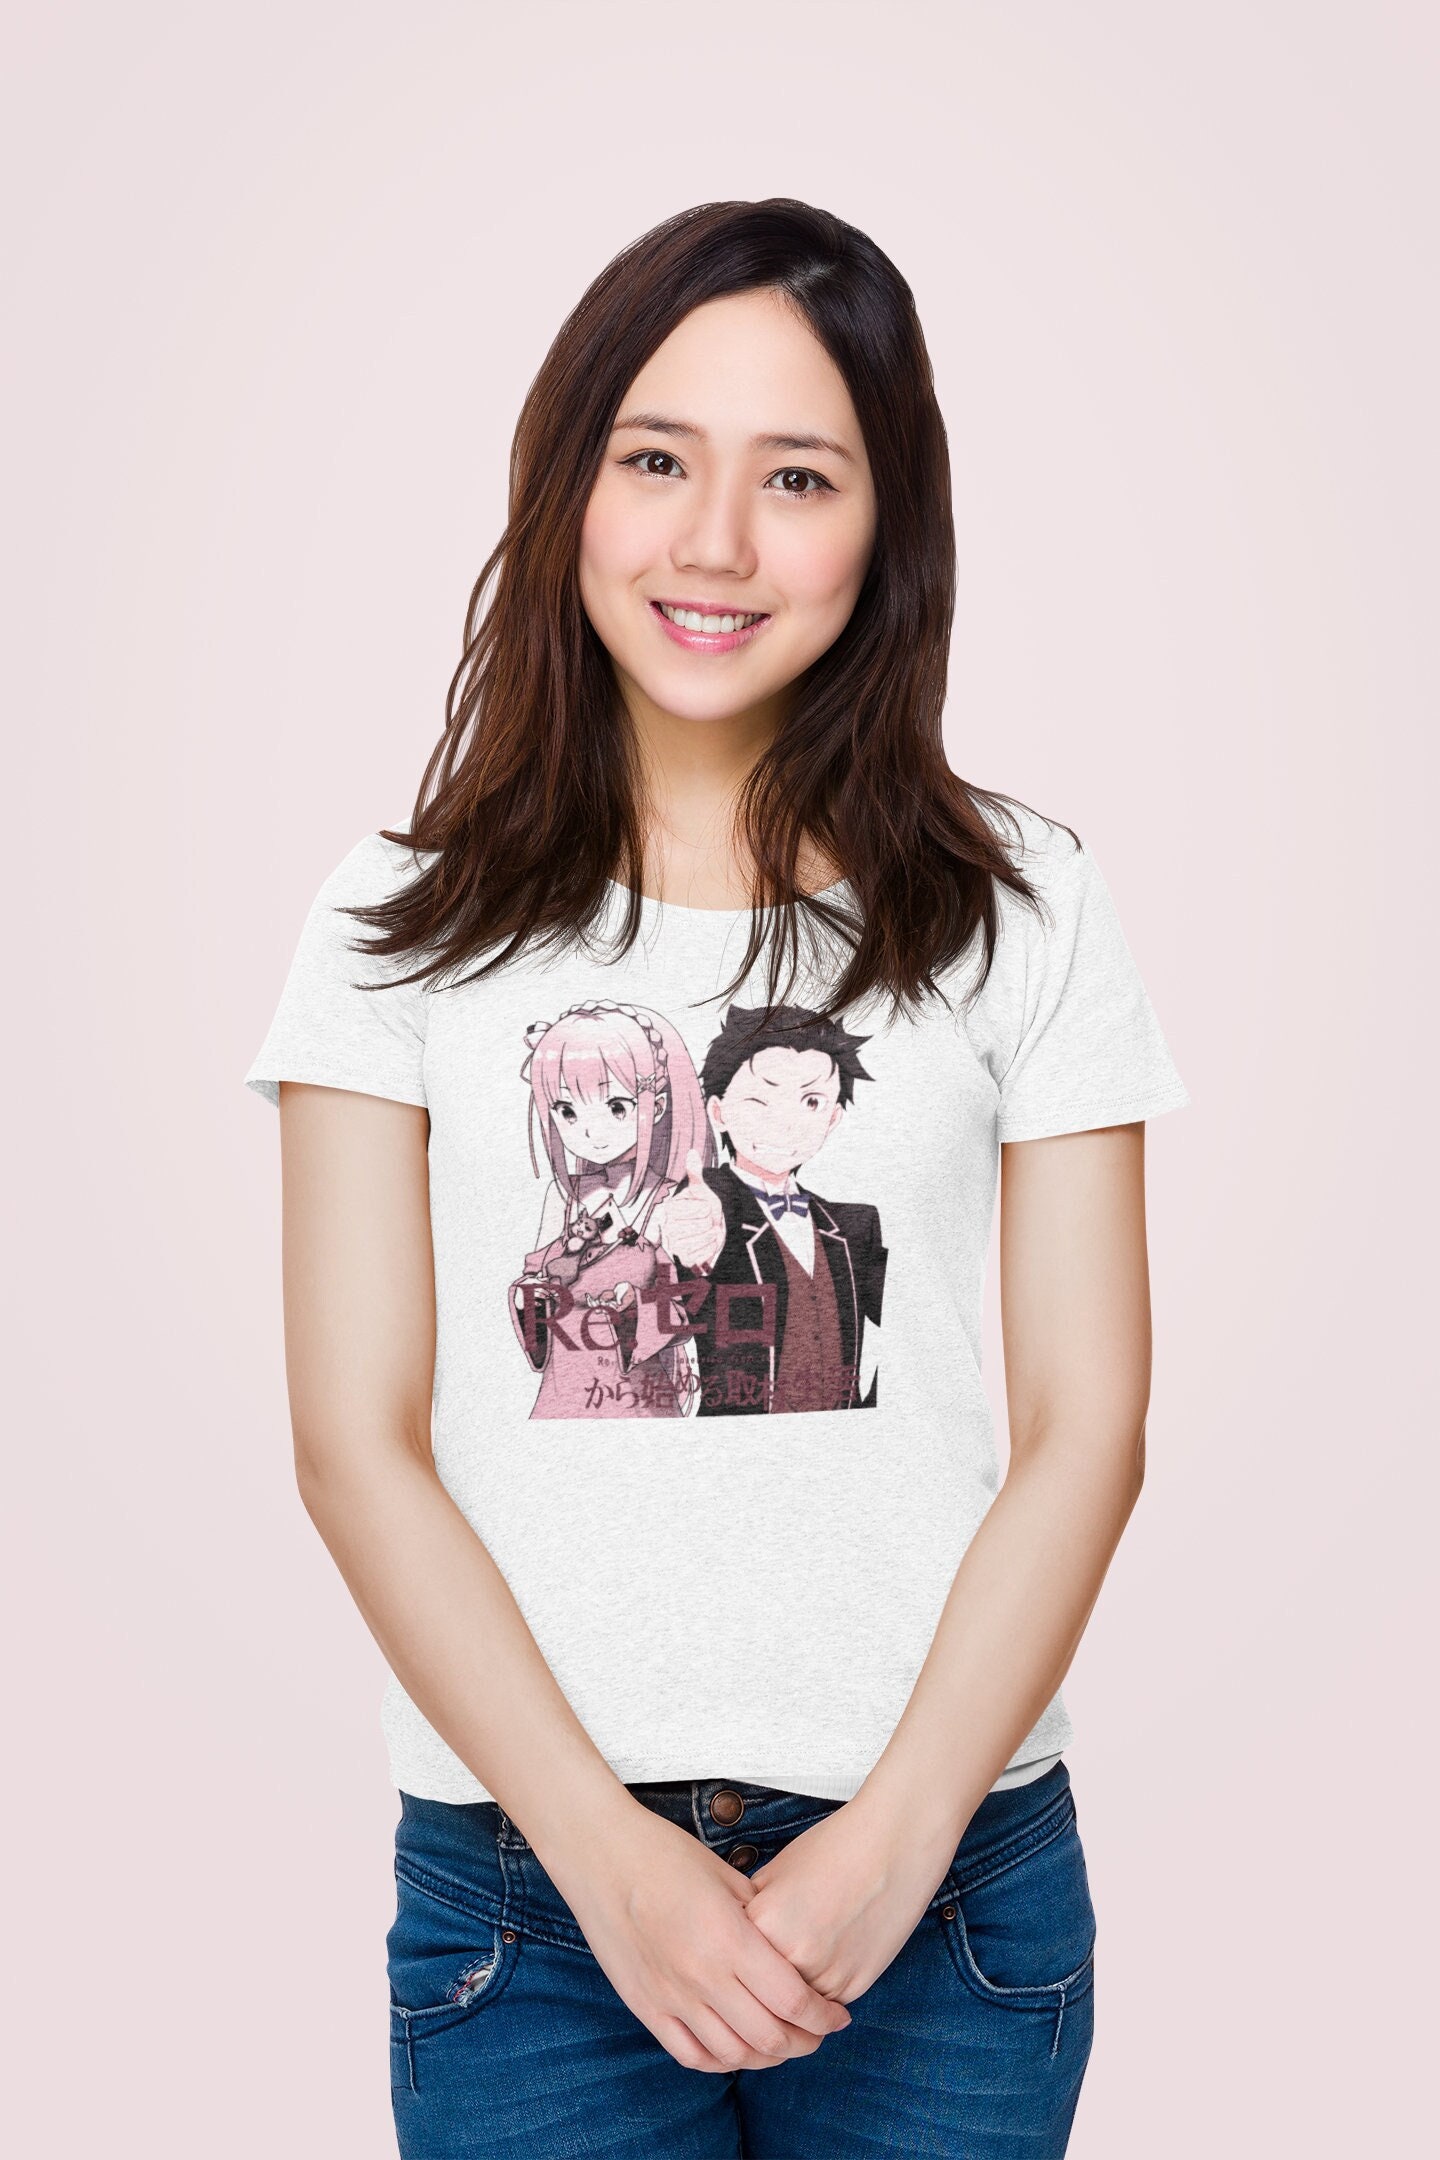 Higurashi No Naku Koro Ni Women's T-Shirts & Tops for Sale